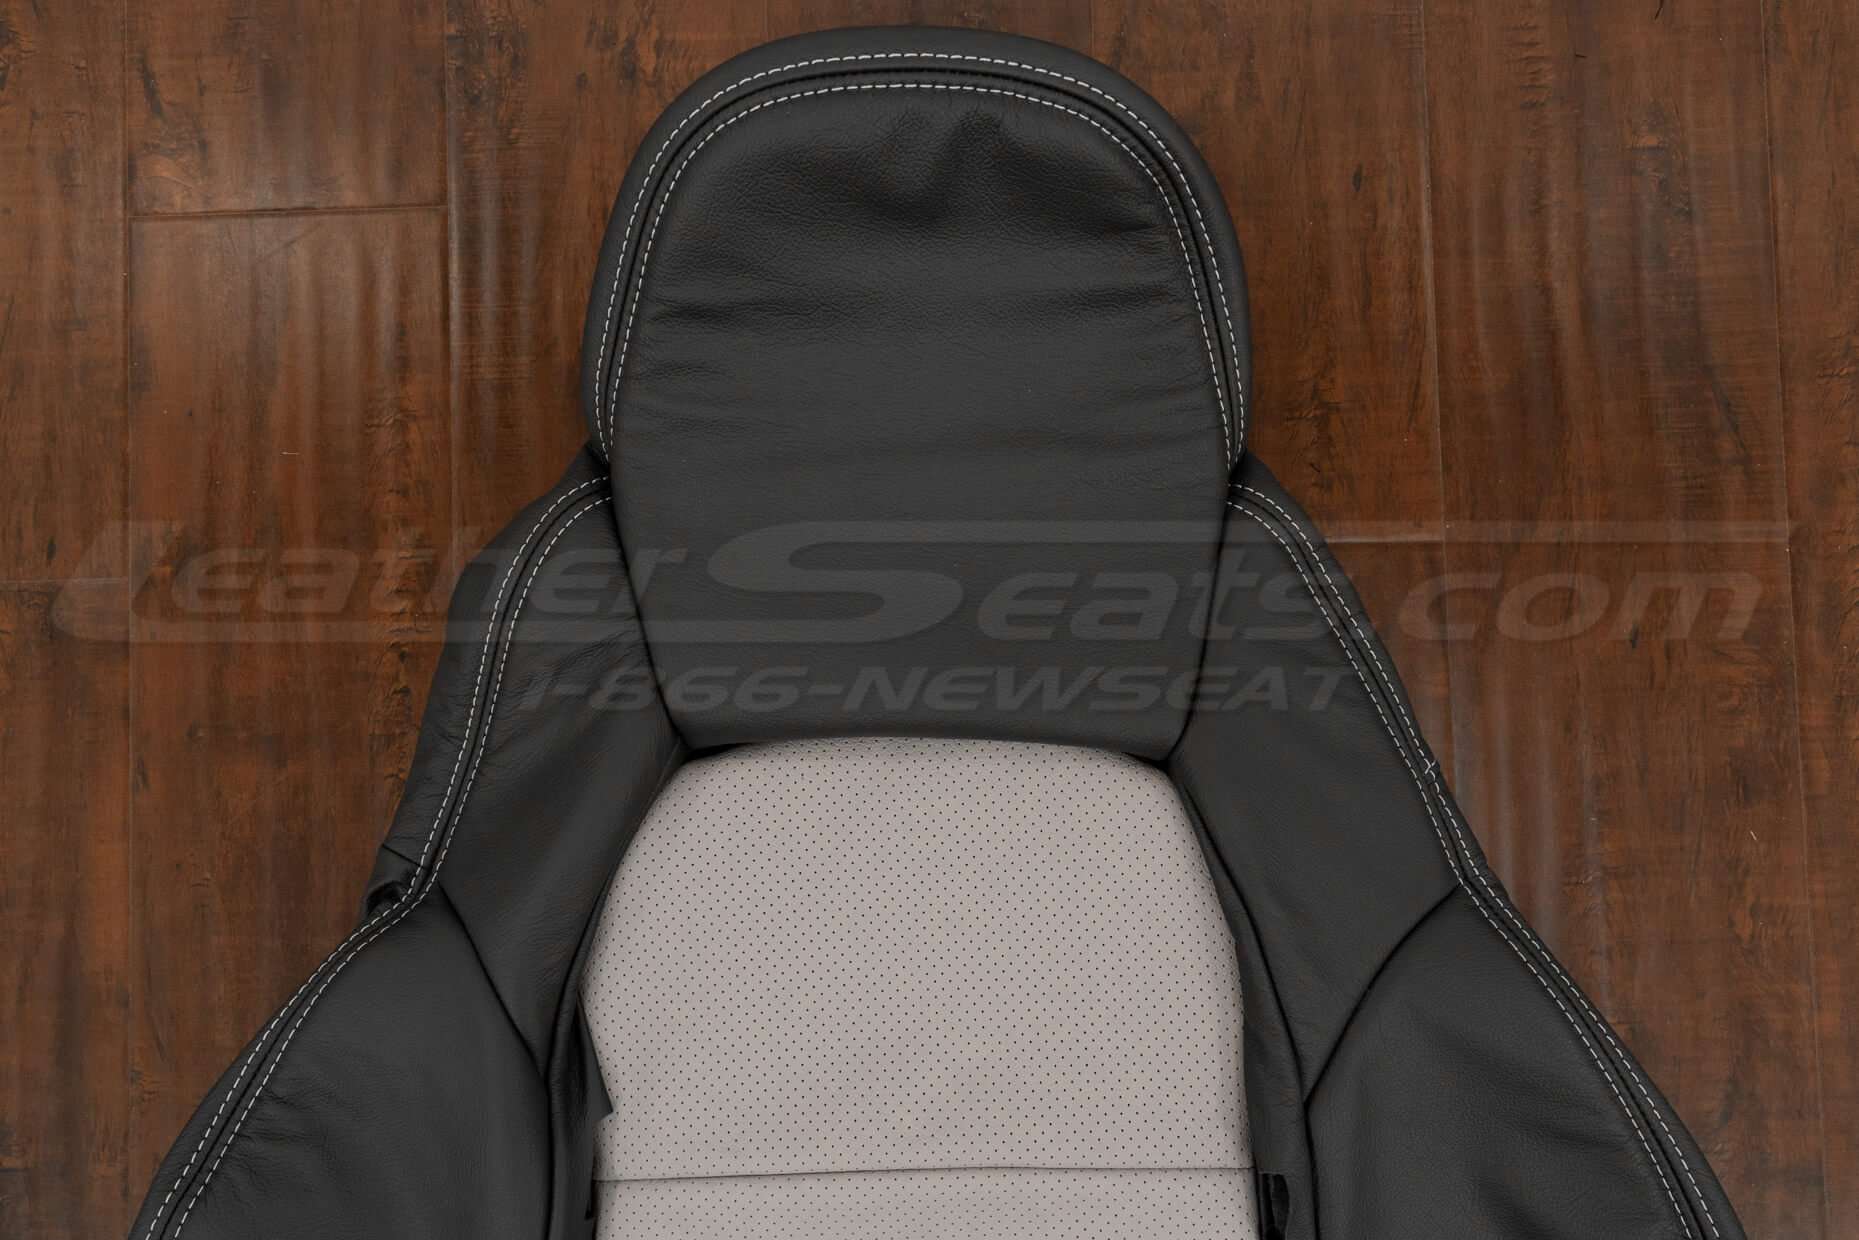 Upper section of backrest & headrest